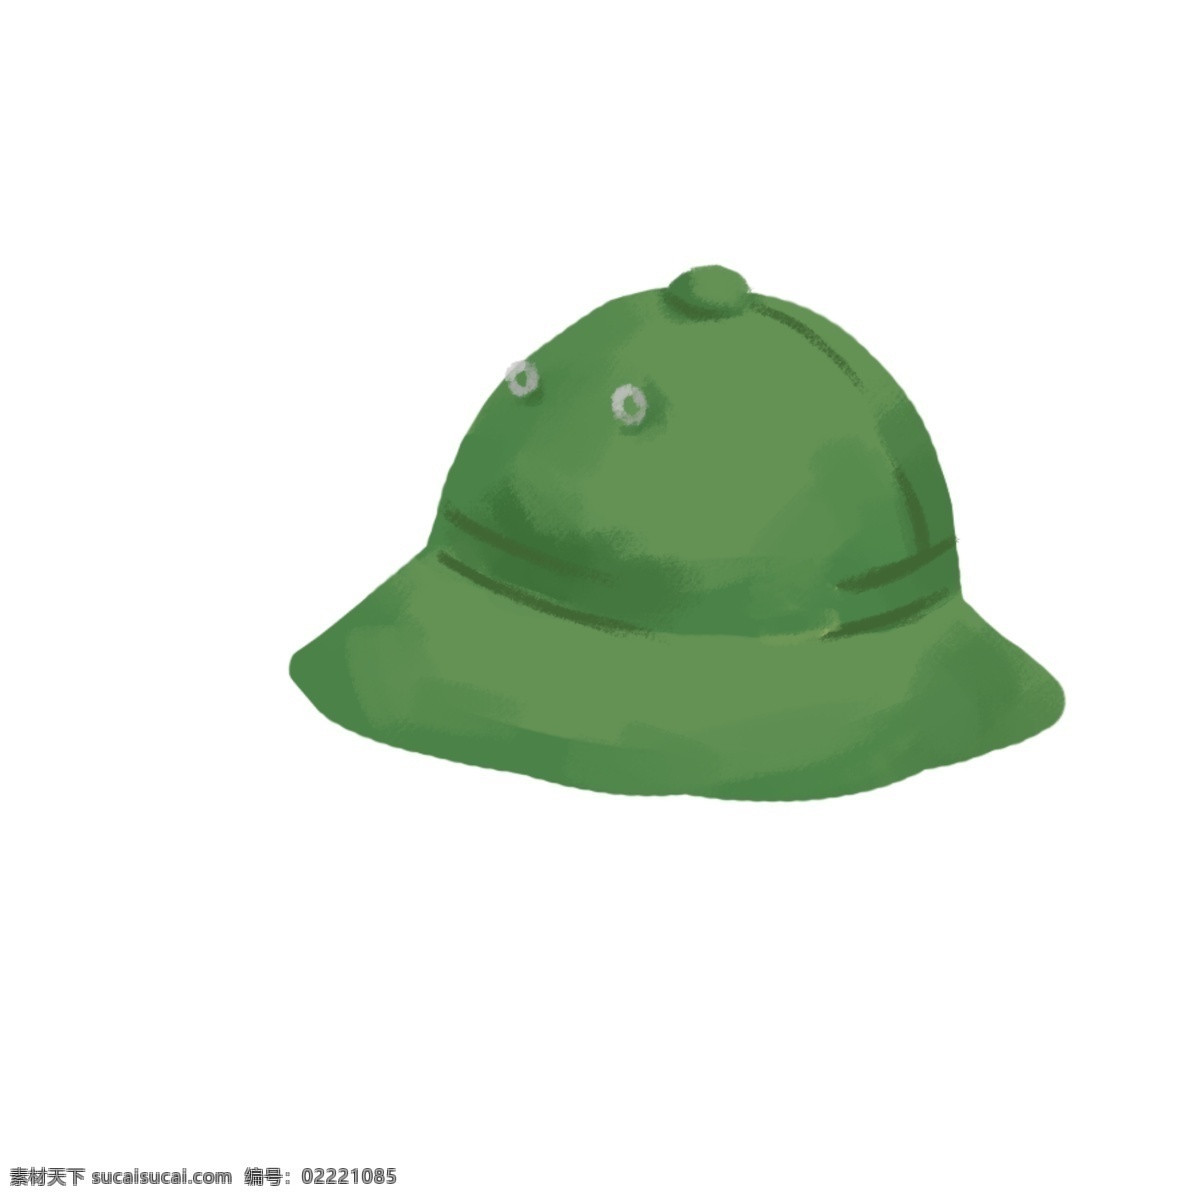 绿色休闲帽子 绿色 花纹 帽子配饰 纽扣 装饰 配饰 帽子图案 简约 卡通手绘 休闲 时尚 潮流 人气 厚涂